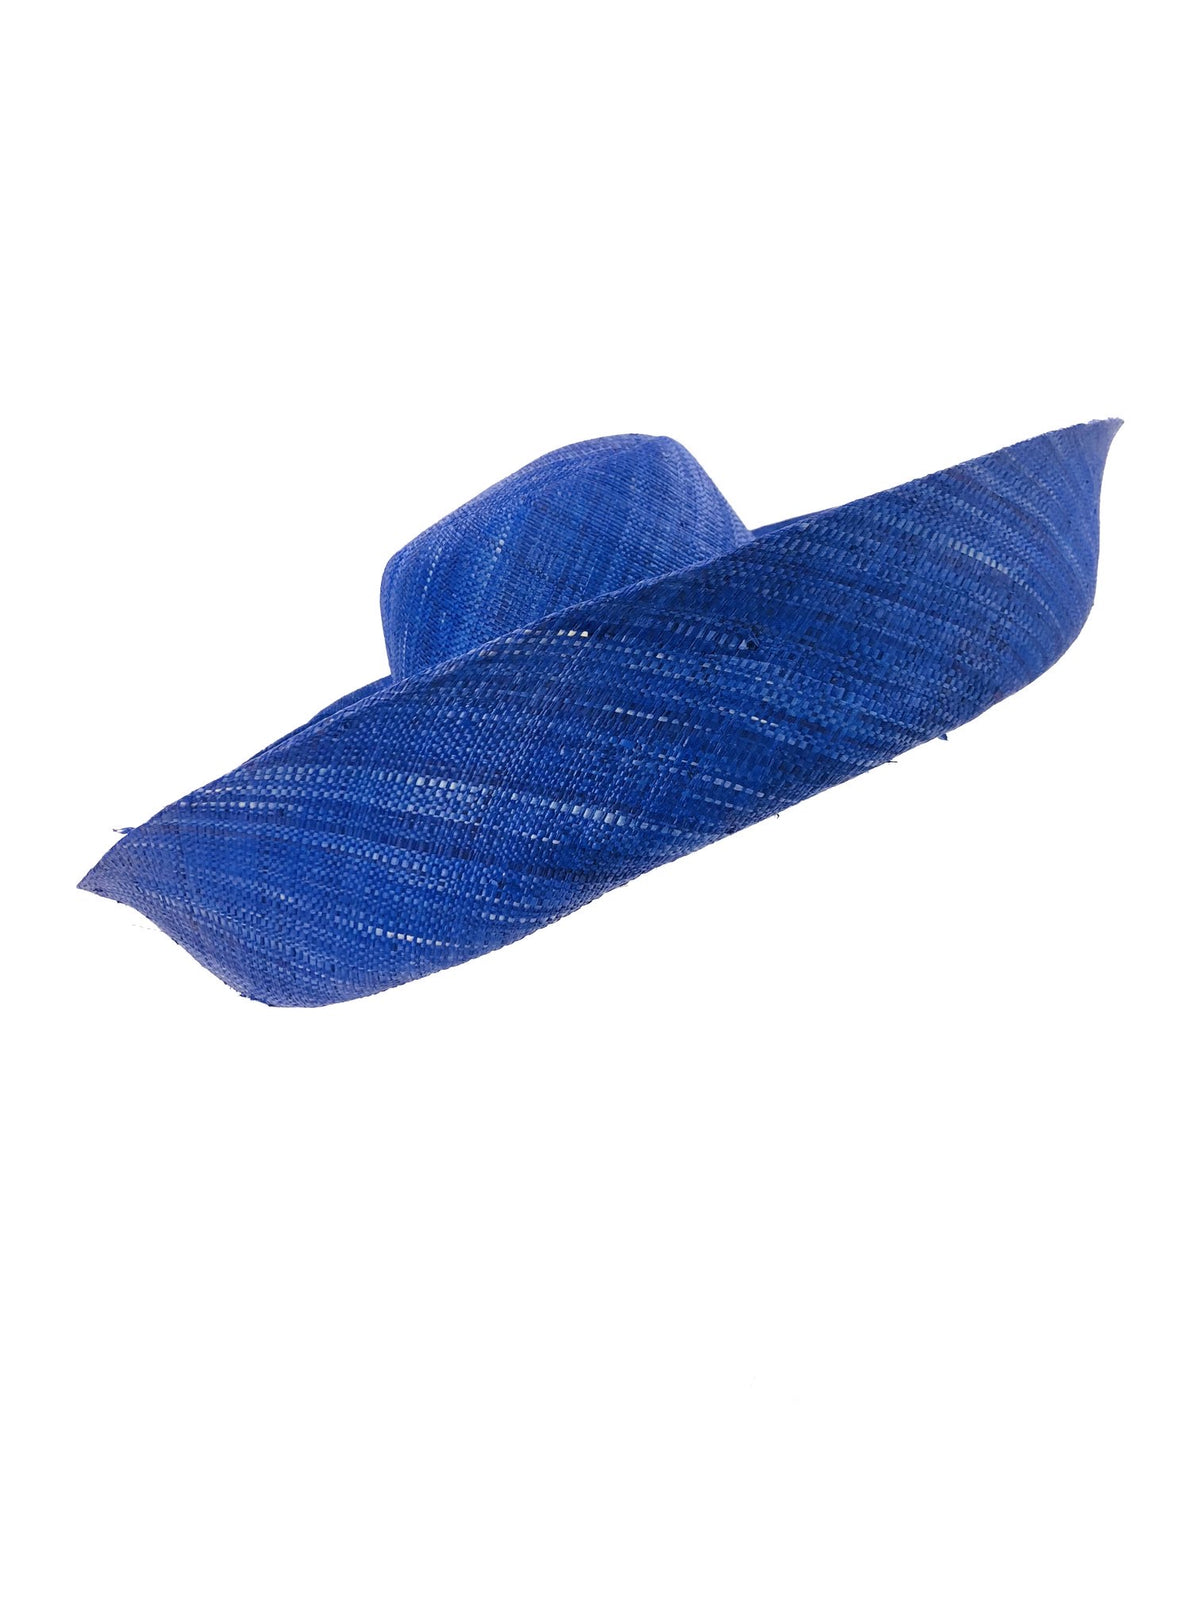 Madagascar Palm Leaf Hat -Blue